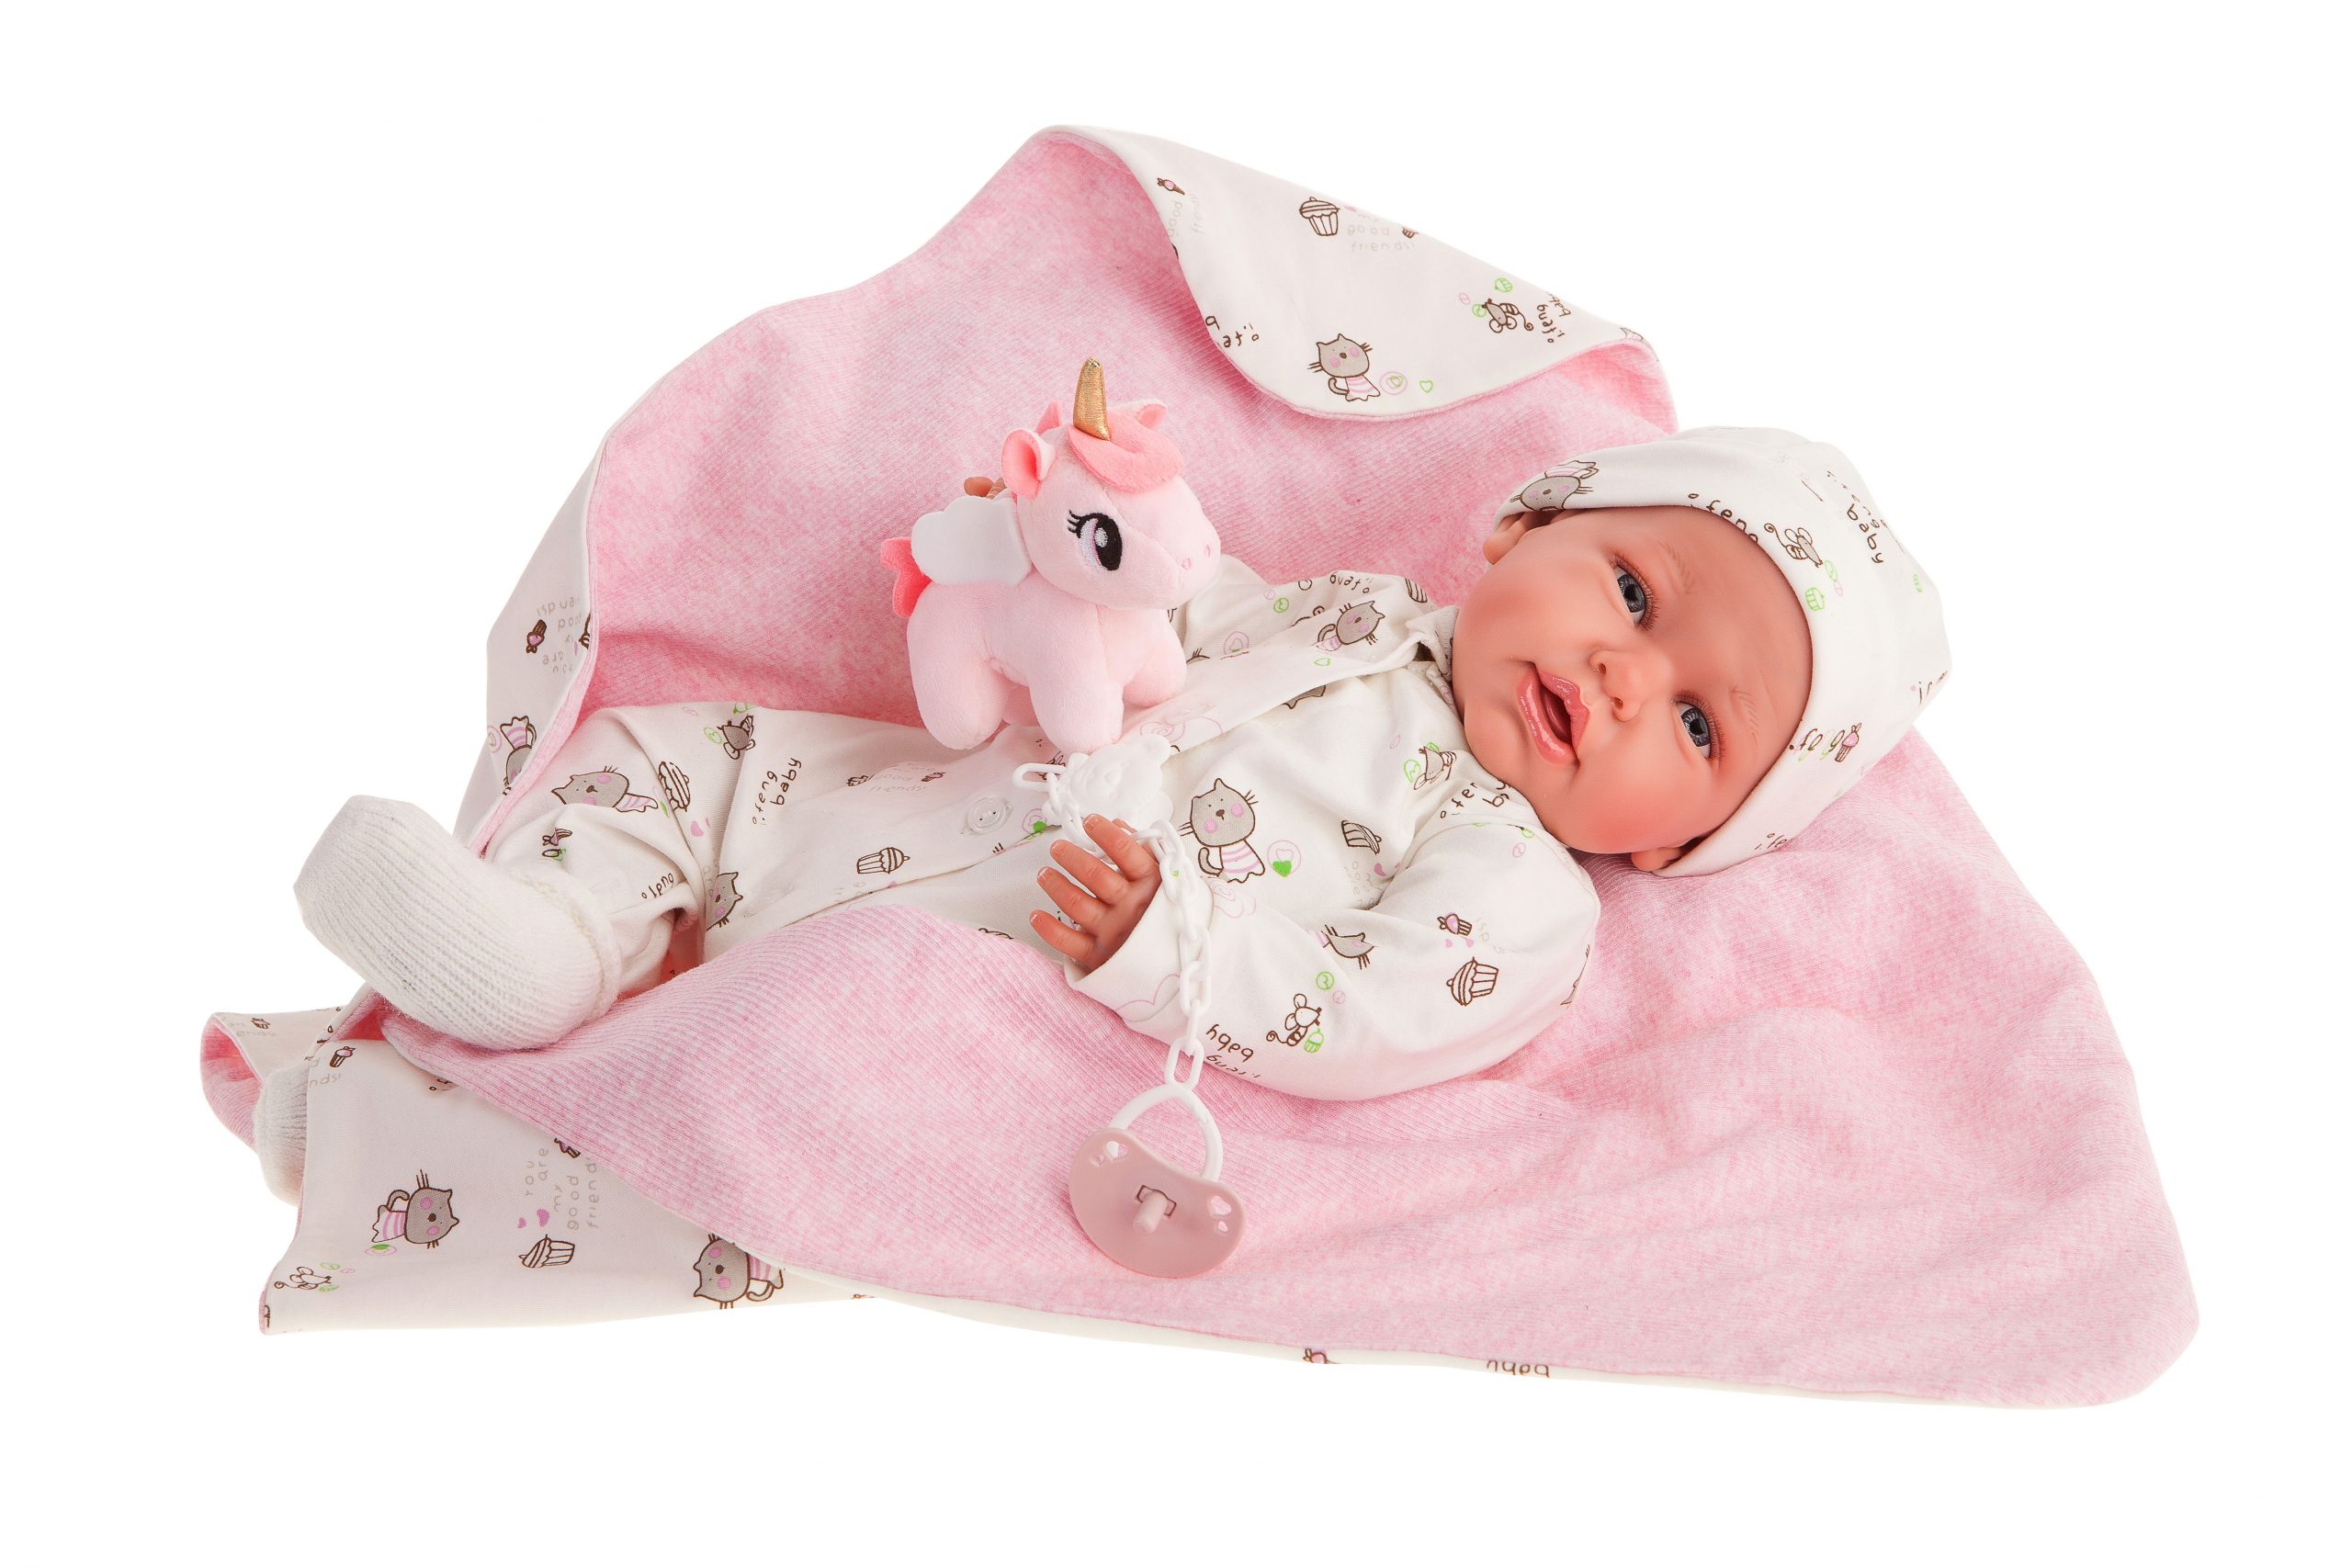 AJ10e Antonio Juan eerste reborn baby grote babypop met kleding deken en speen 52 cm –